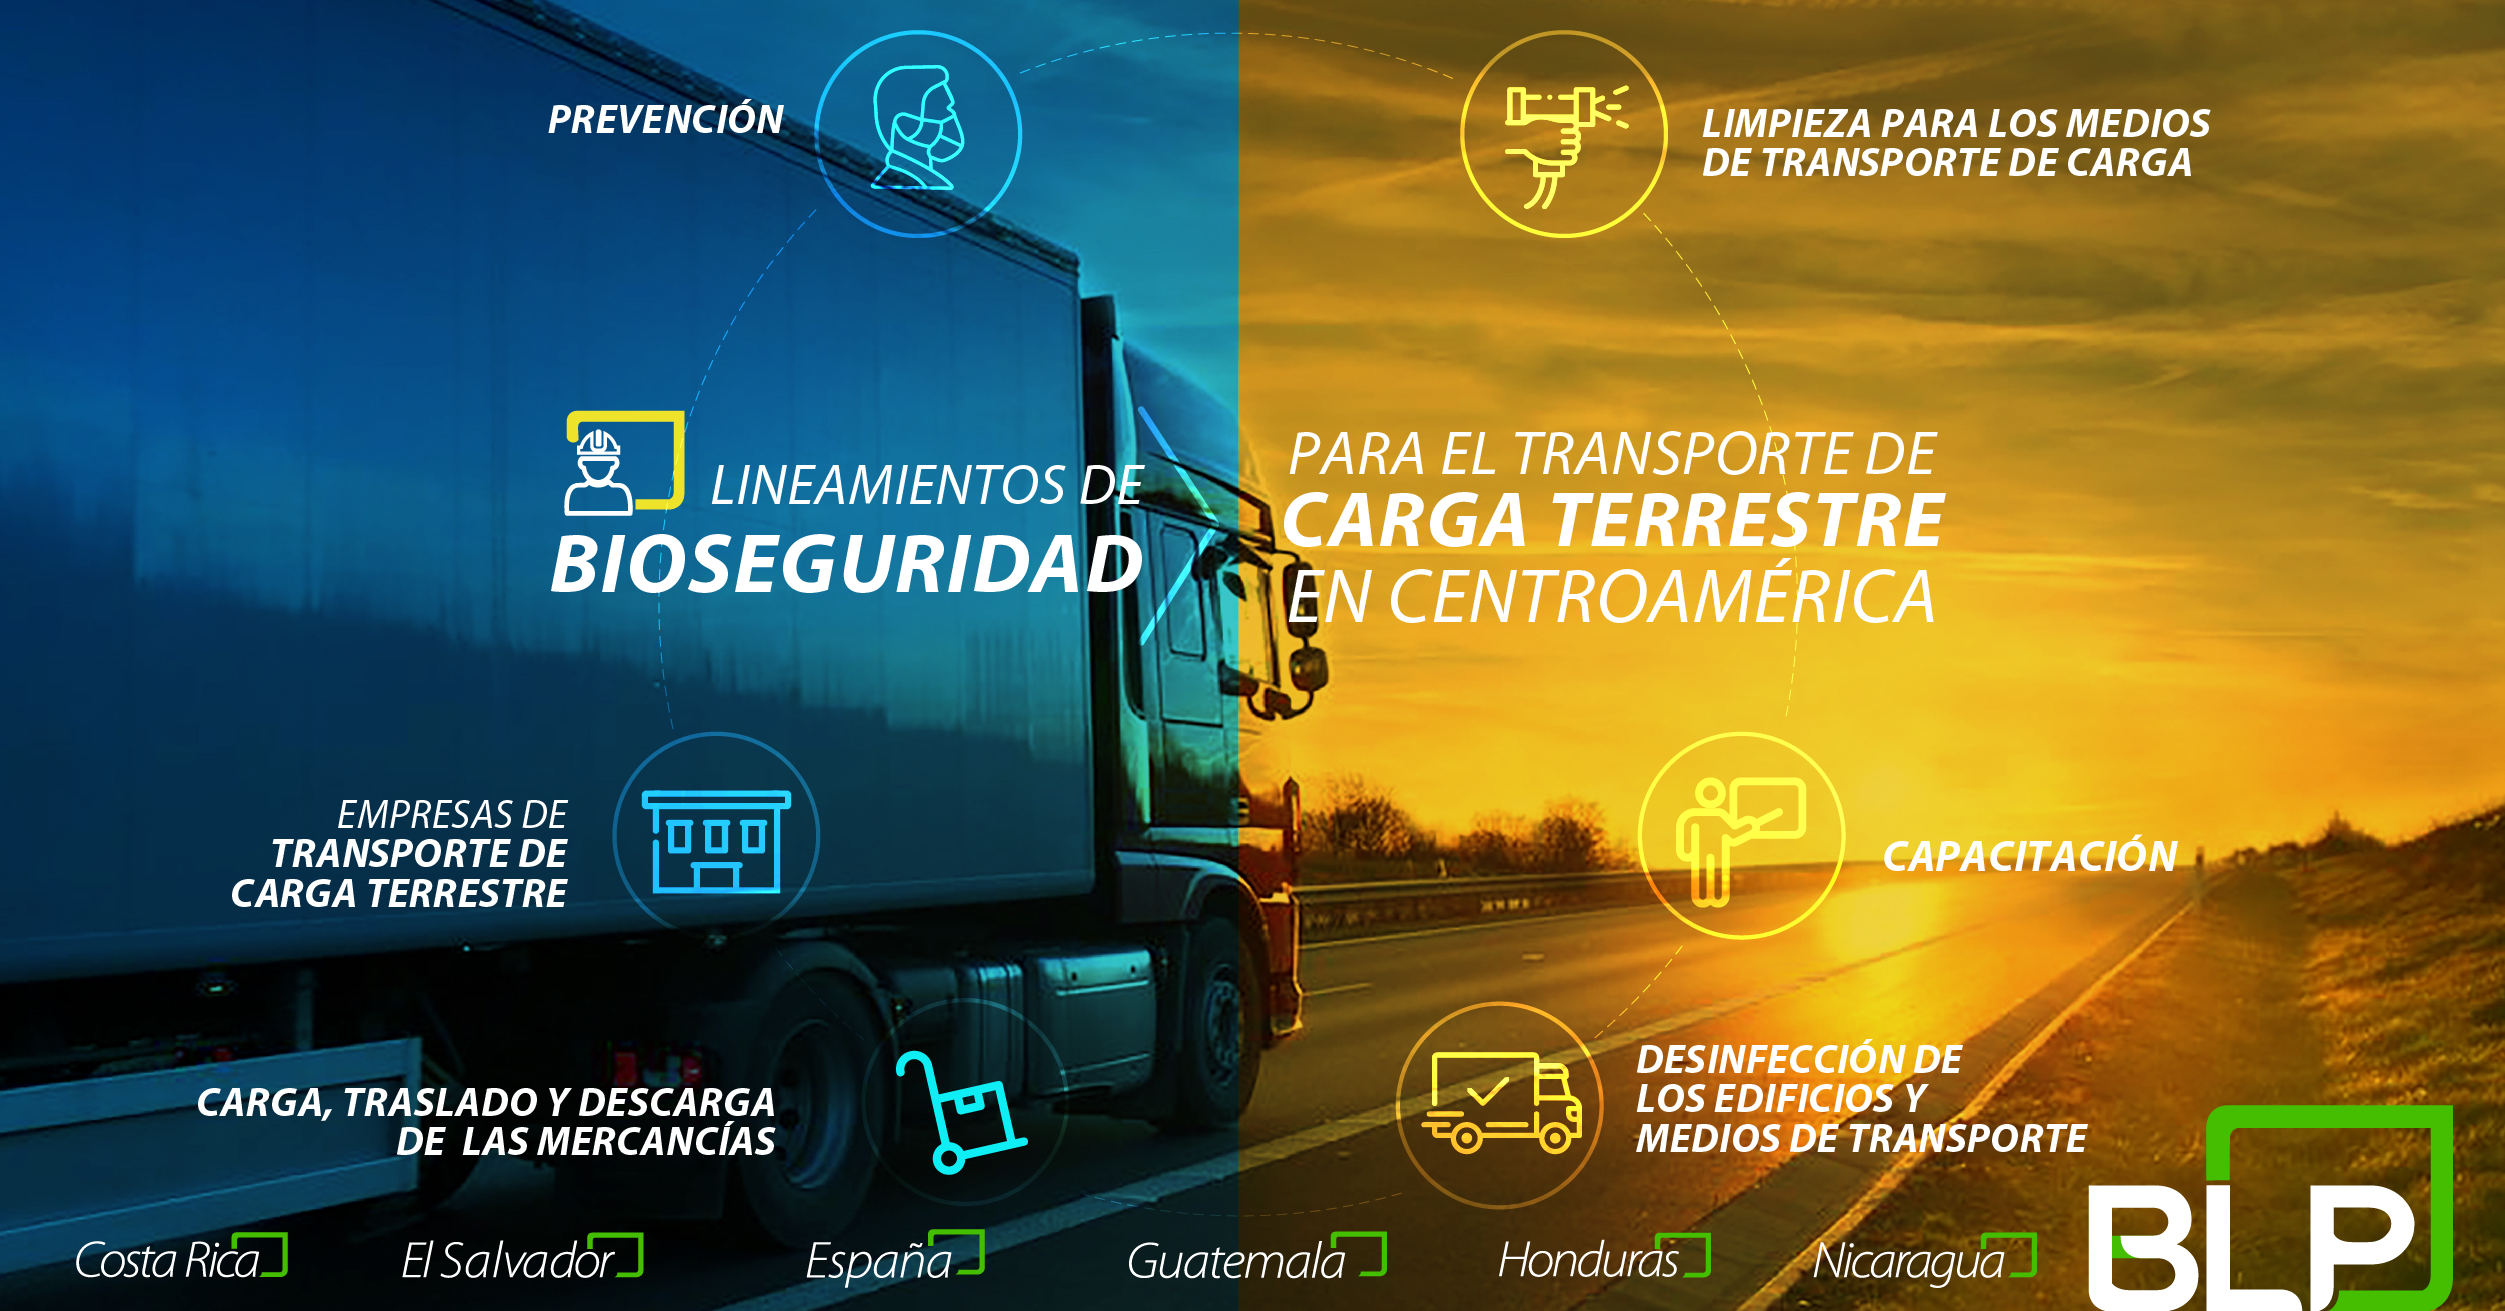 Lineamientos de bioseguridad aplicables al sector del transporte de carga terrestre en Centroamérica.